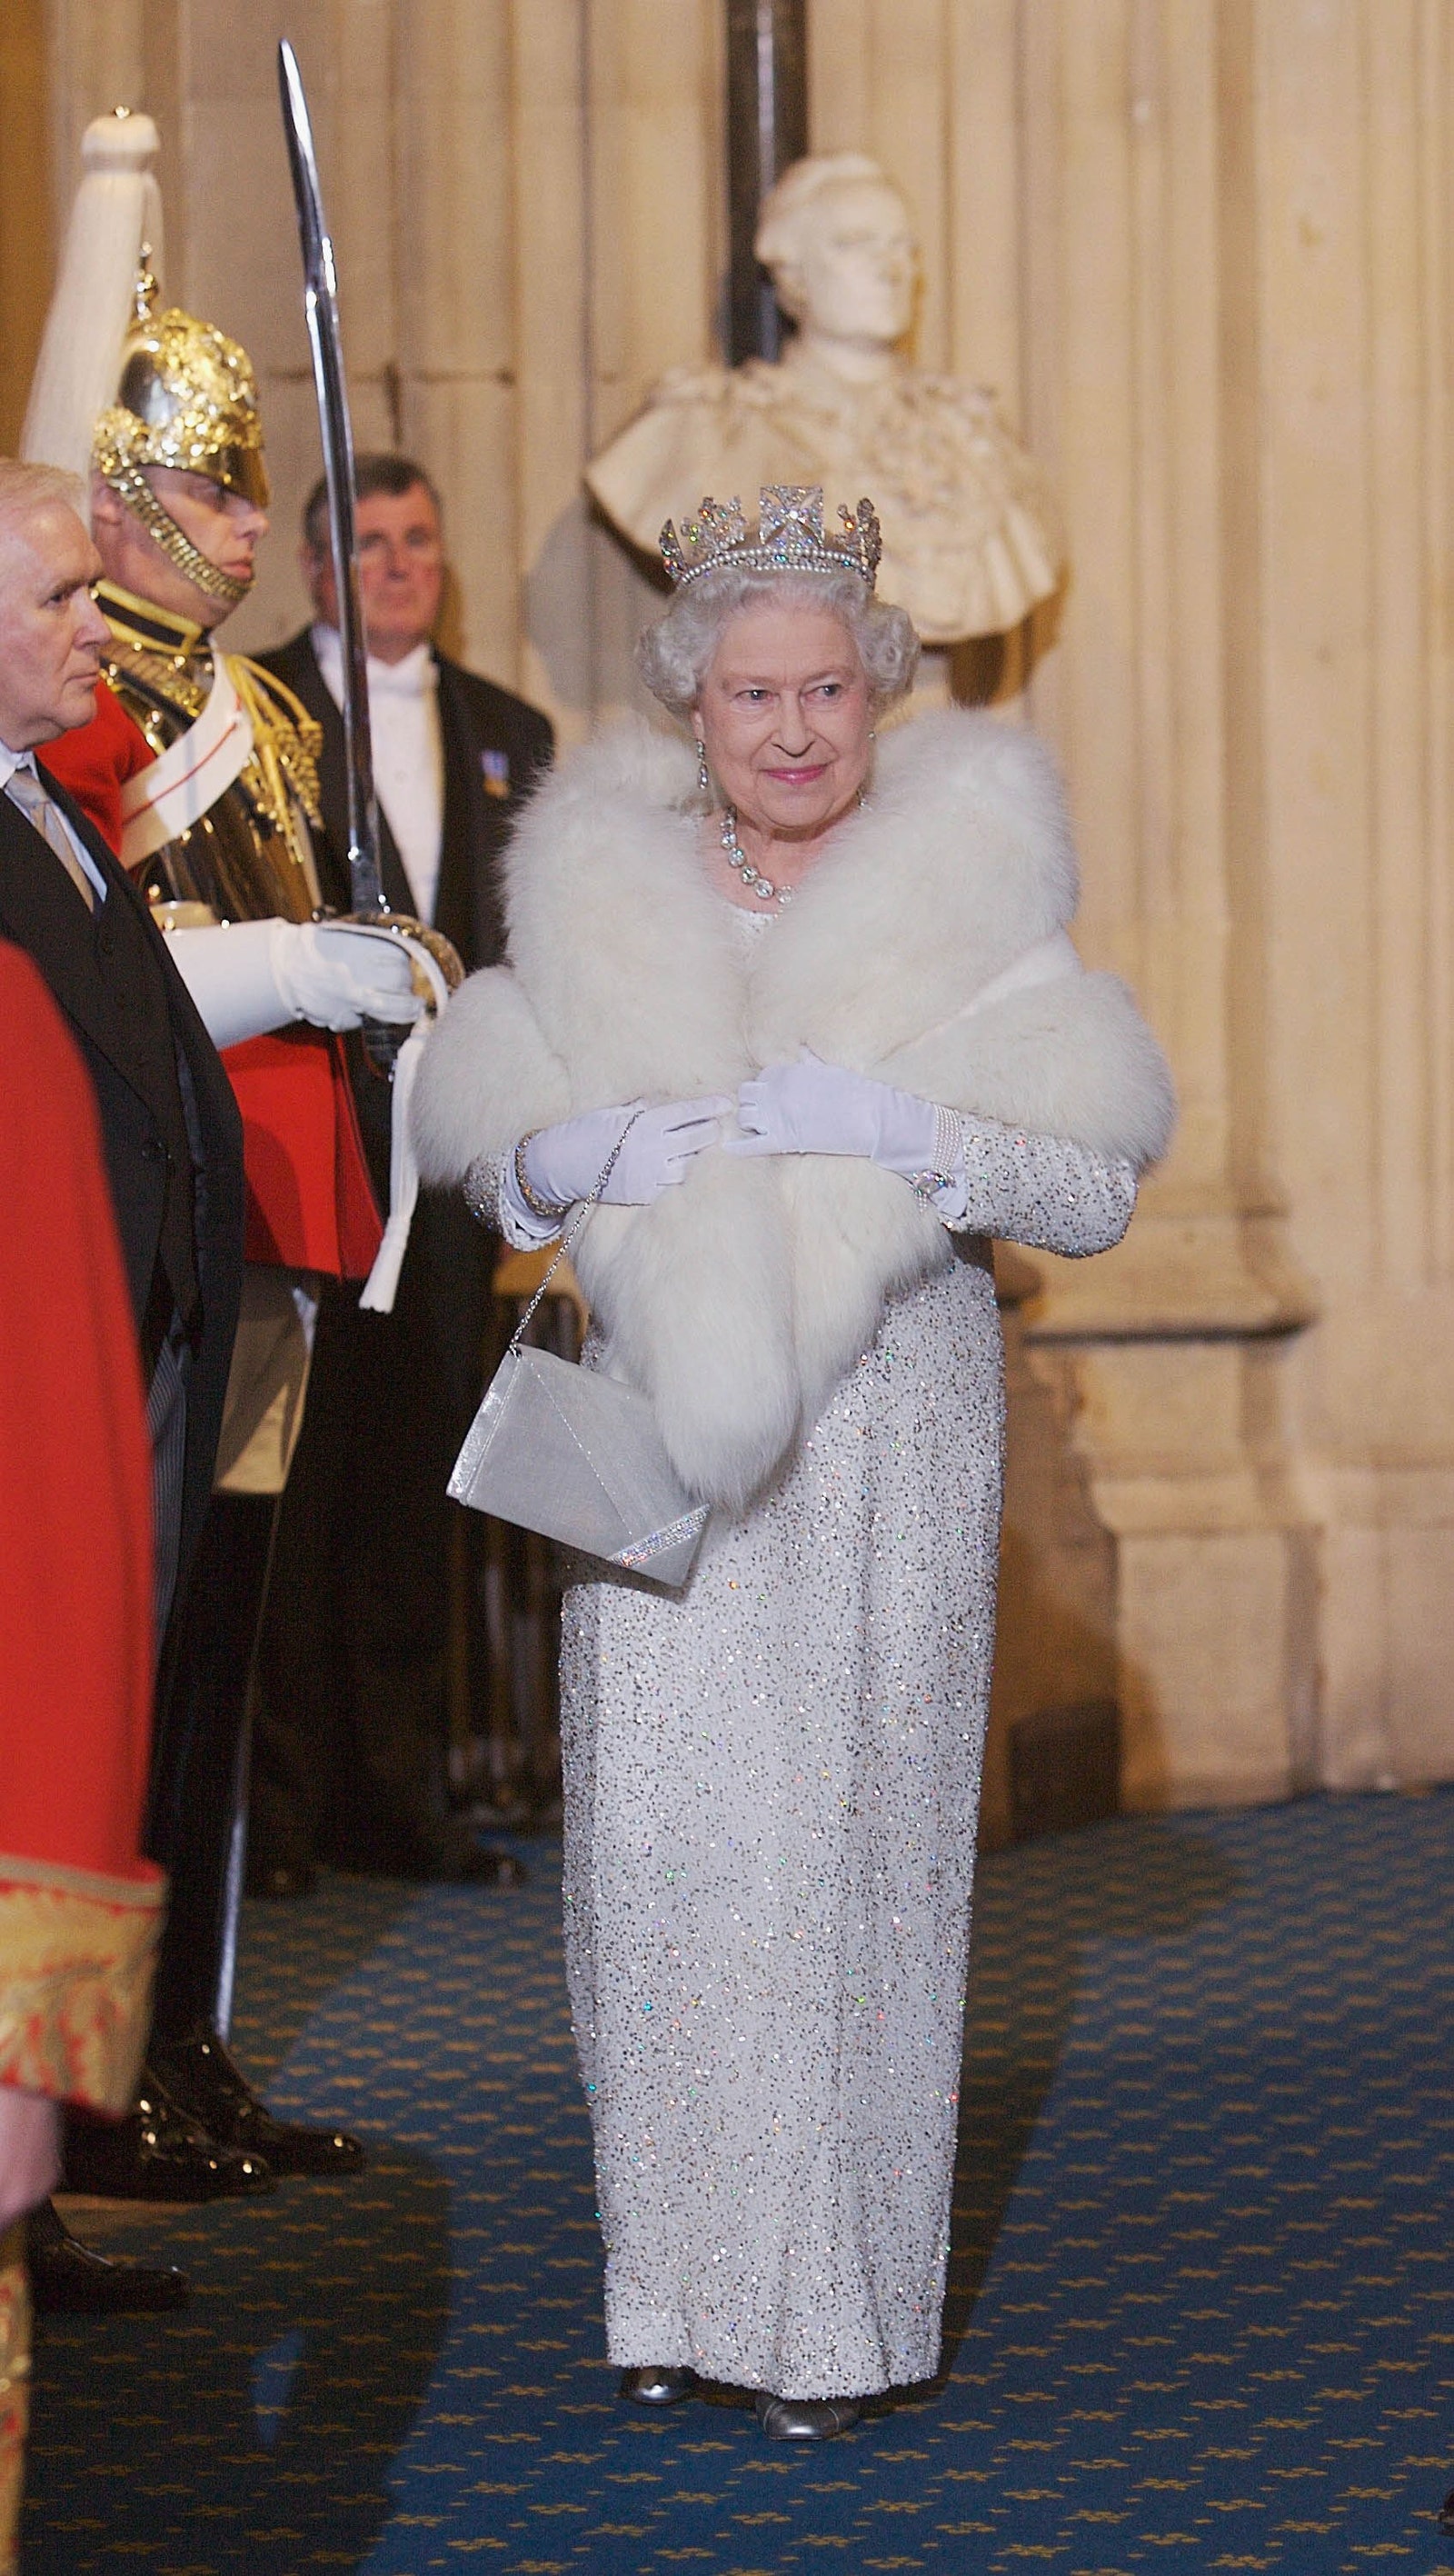 Năm 2006, tại Lễ khai mạc Quốc hội, Nữ hoàng đã chọn một chiếc áo choàng đính hạt màu trắng với một chiếc áo choàng lông thú và đeo chiếc diadem George IV.